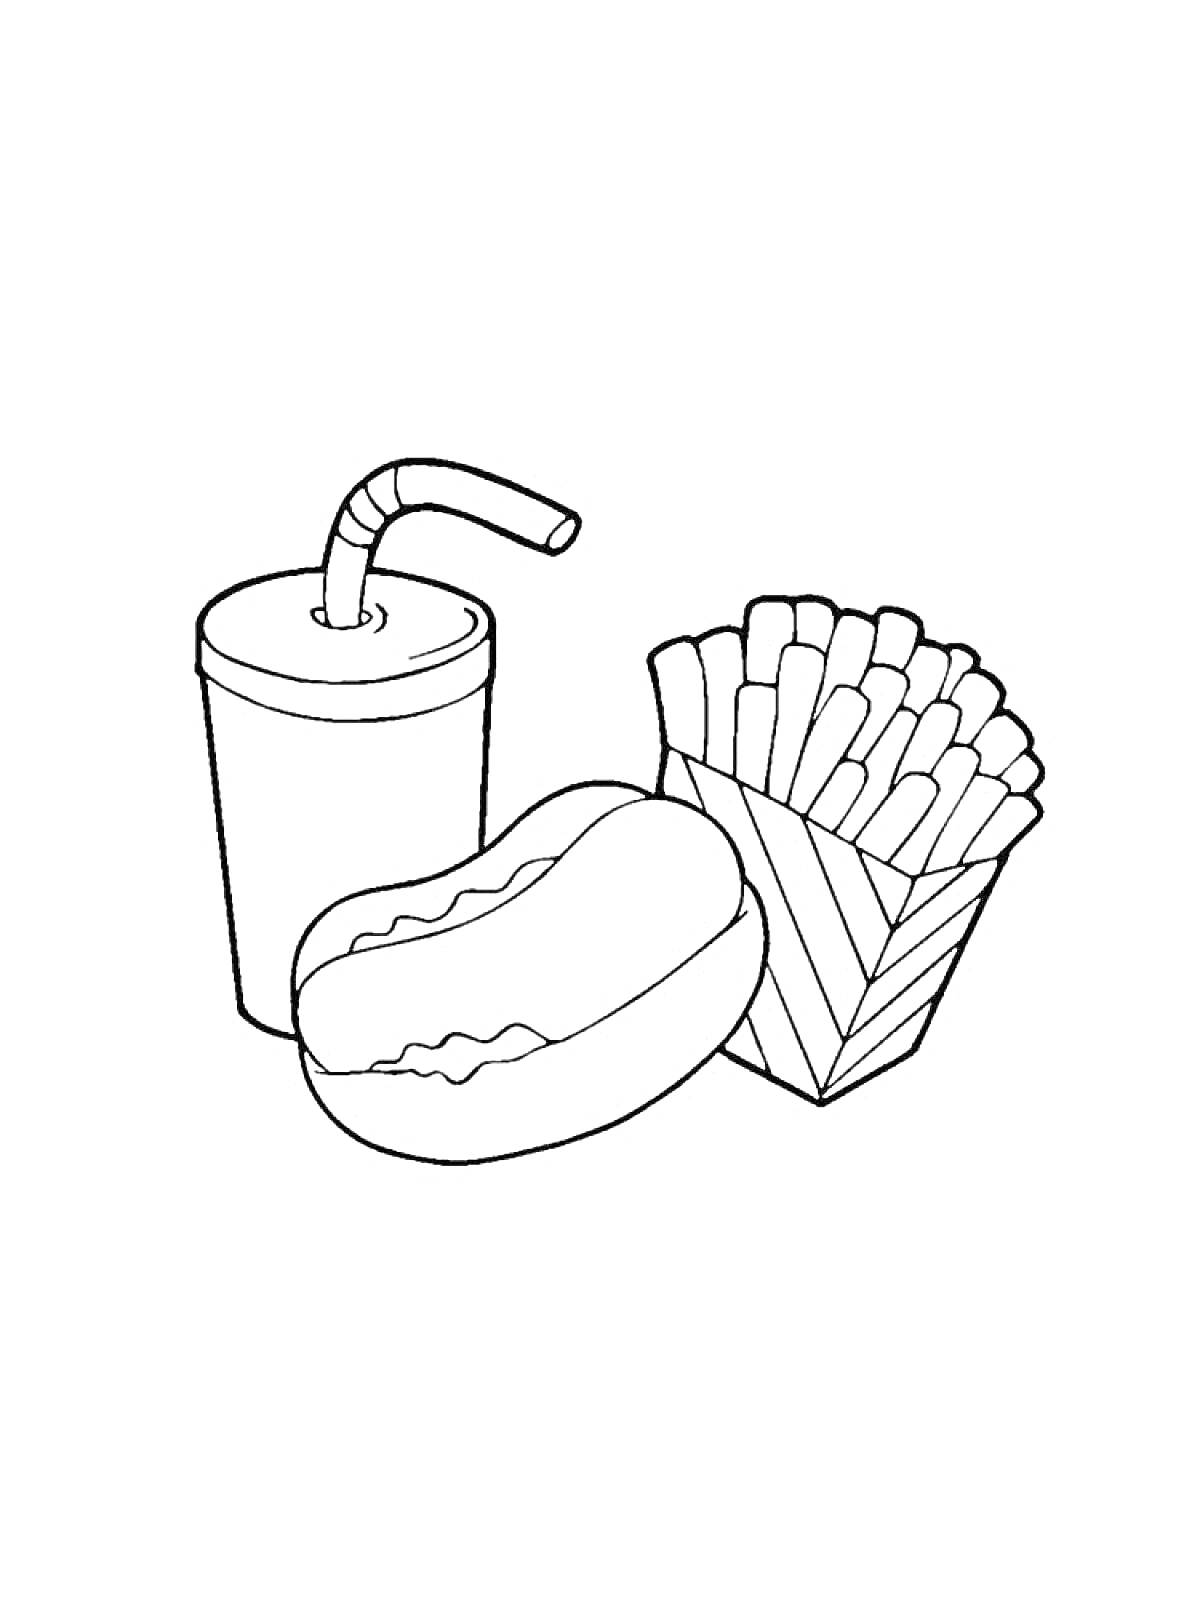 Раскраска Стакан с трубочкой, хот-дог и картофель фри